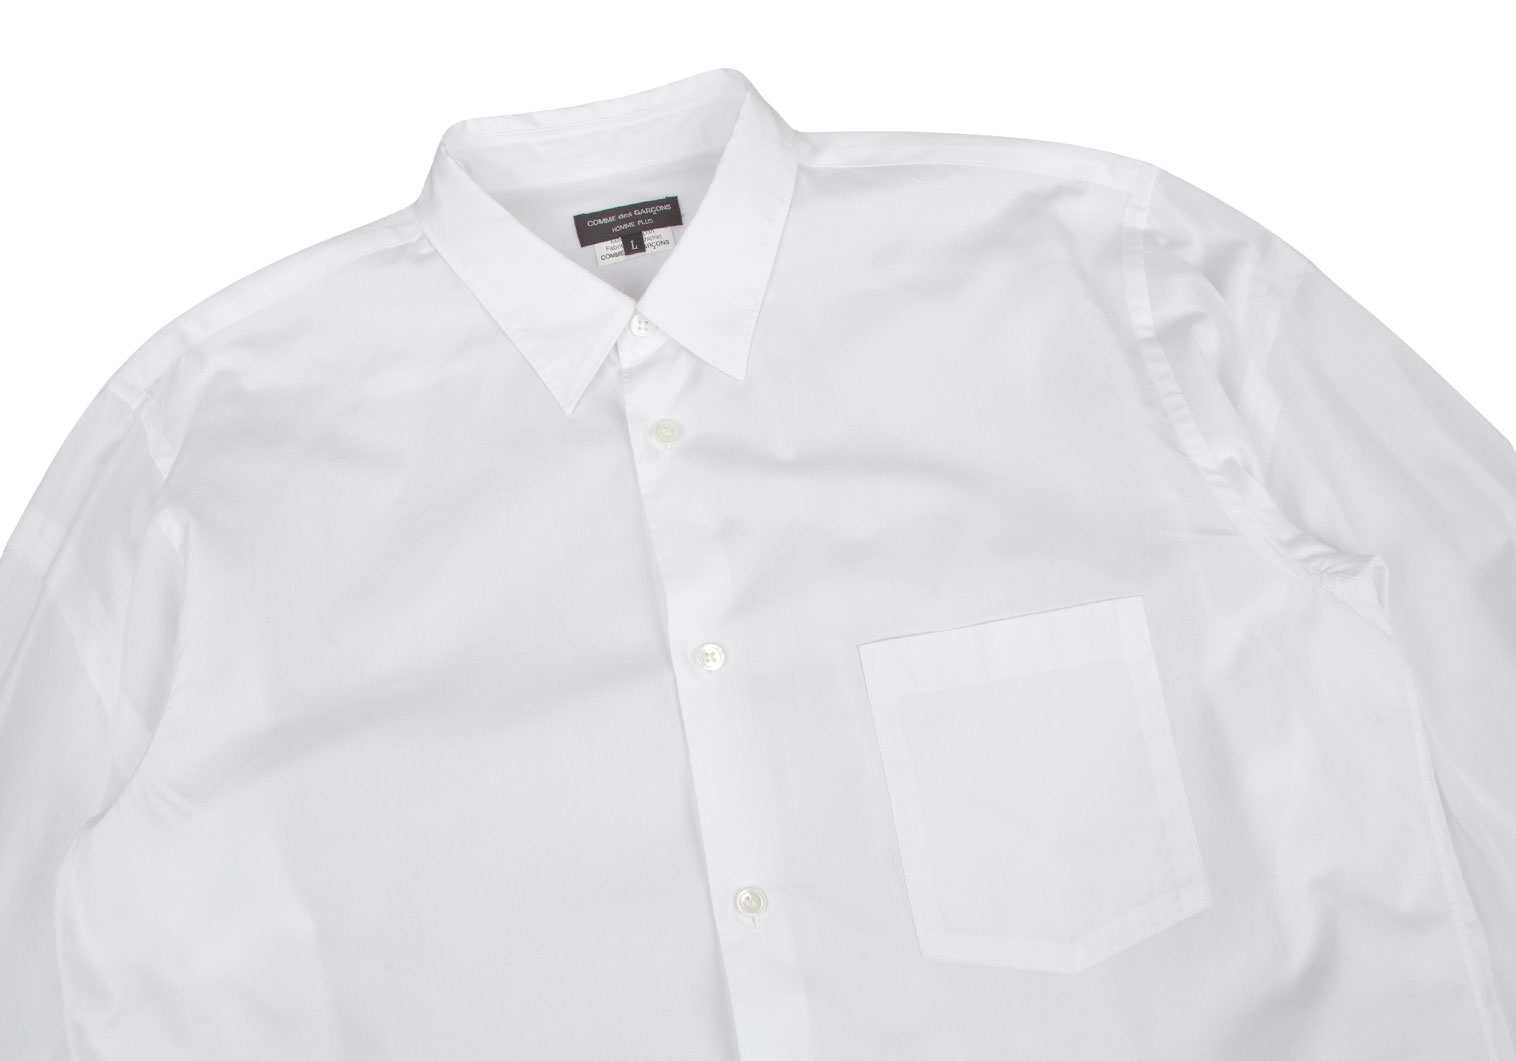 商品詳細コムデギャルソンオム 2009年 ドット柄 半袖 シャツ XS 茶×白